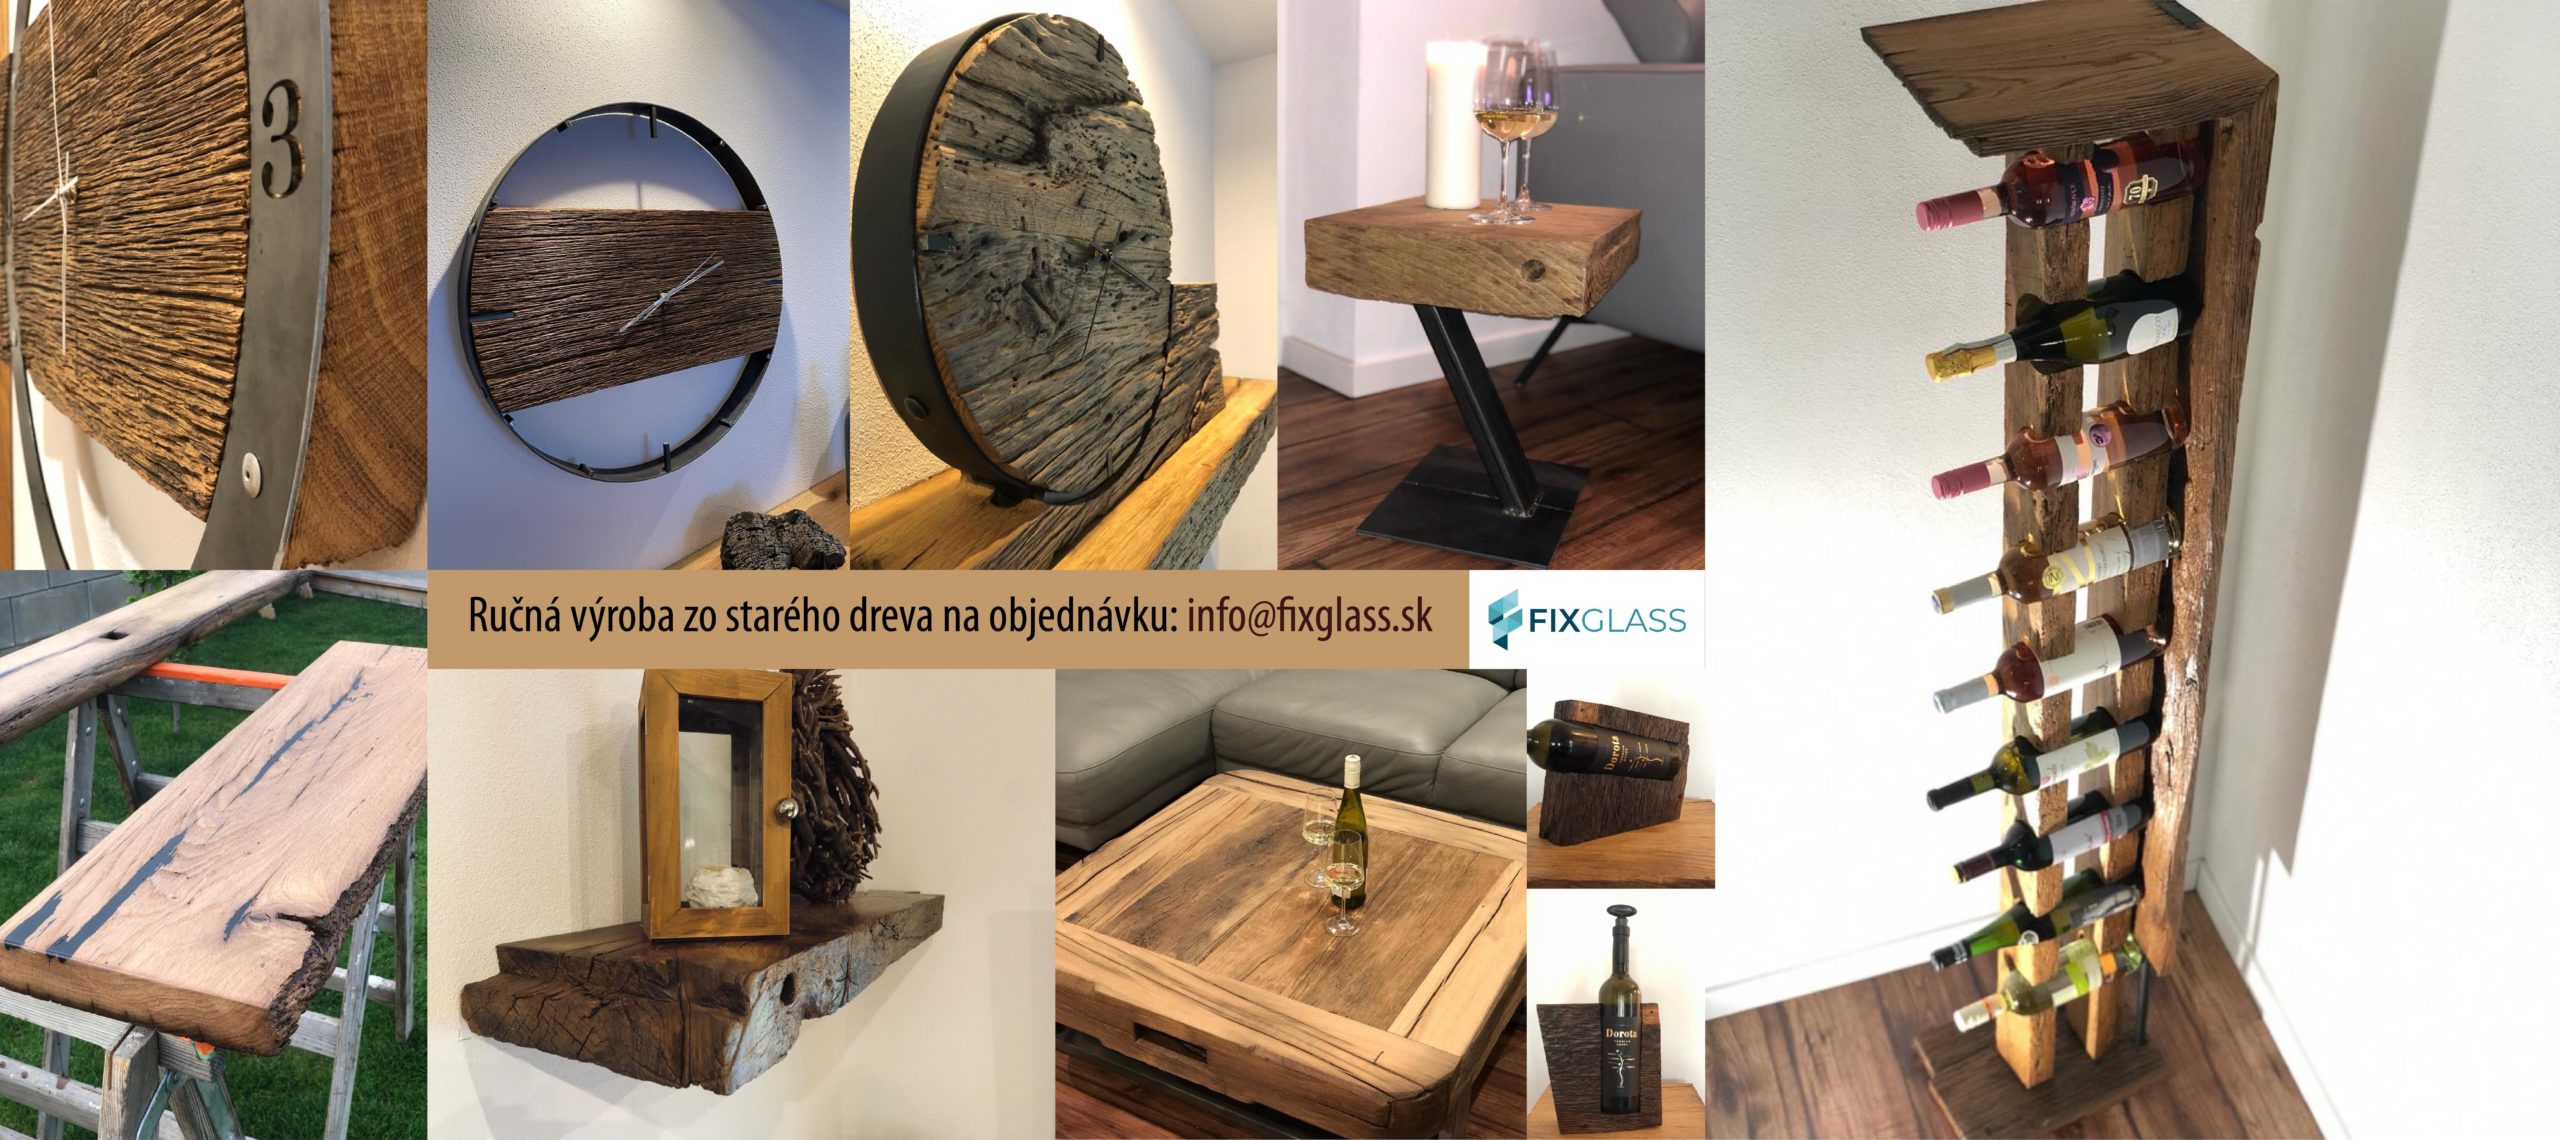 RUčná výroba z dreva: info@fixglass.sk